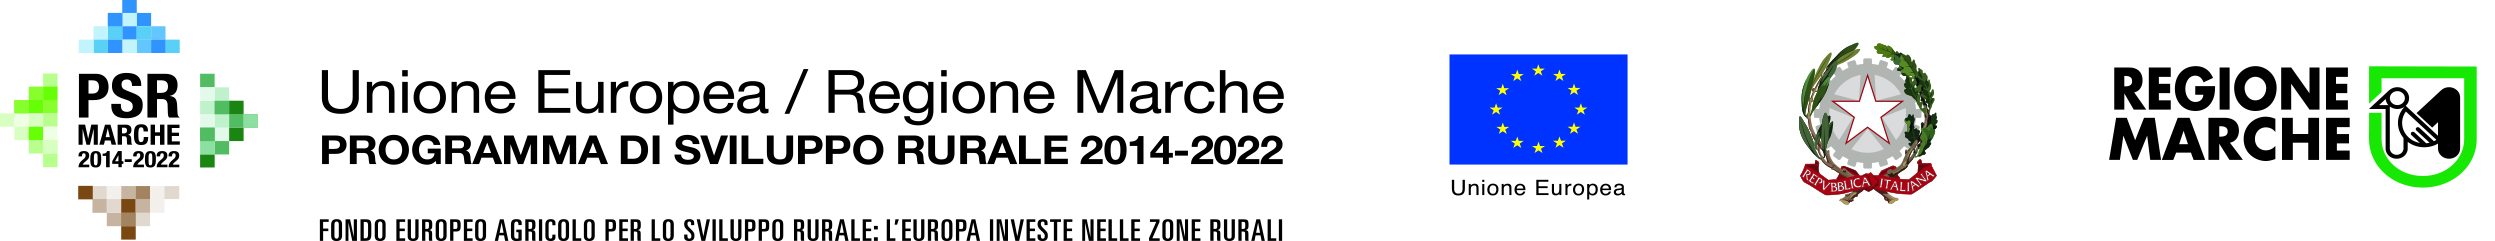 PSR 2014-2022 SOTTOMISURA 16.1 Finanziamento gruppi operativi - Consorzio Marche Bio